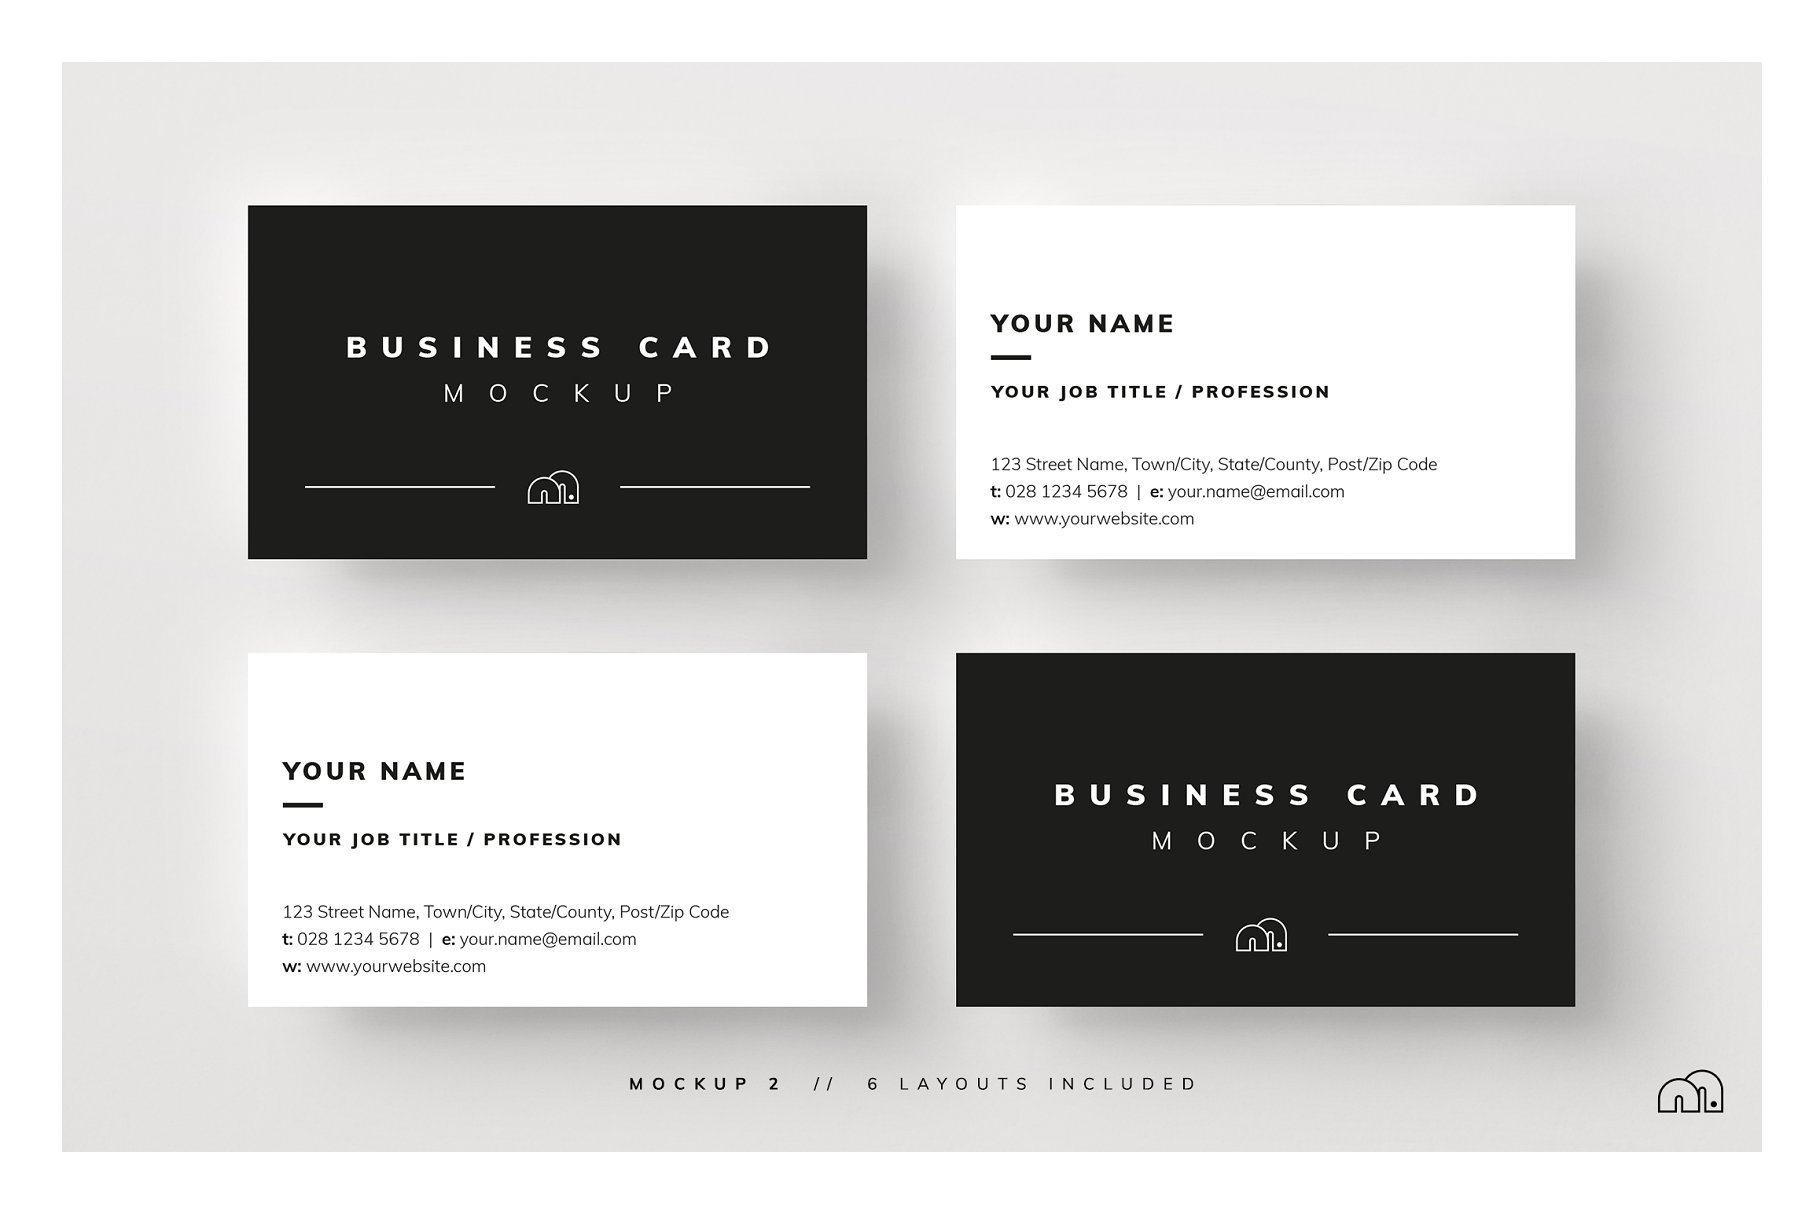 多角度多样式名片样机模板 Business Card Mockup插图(3)